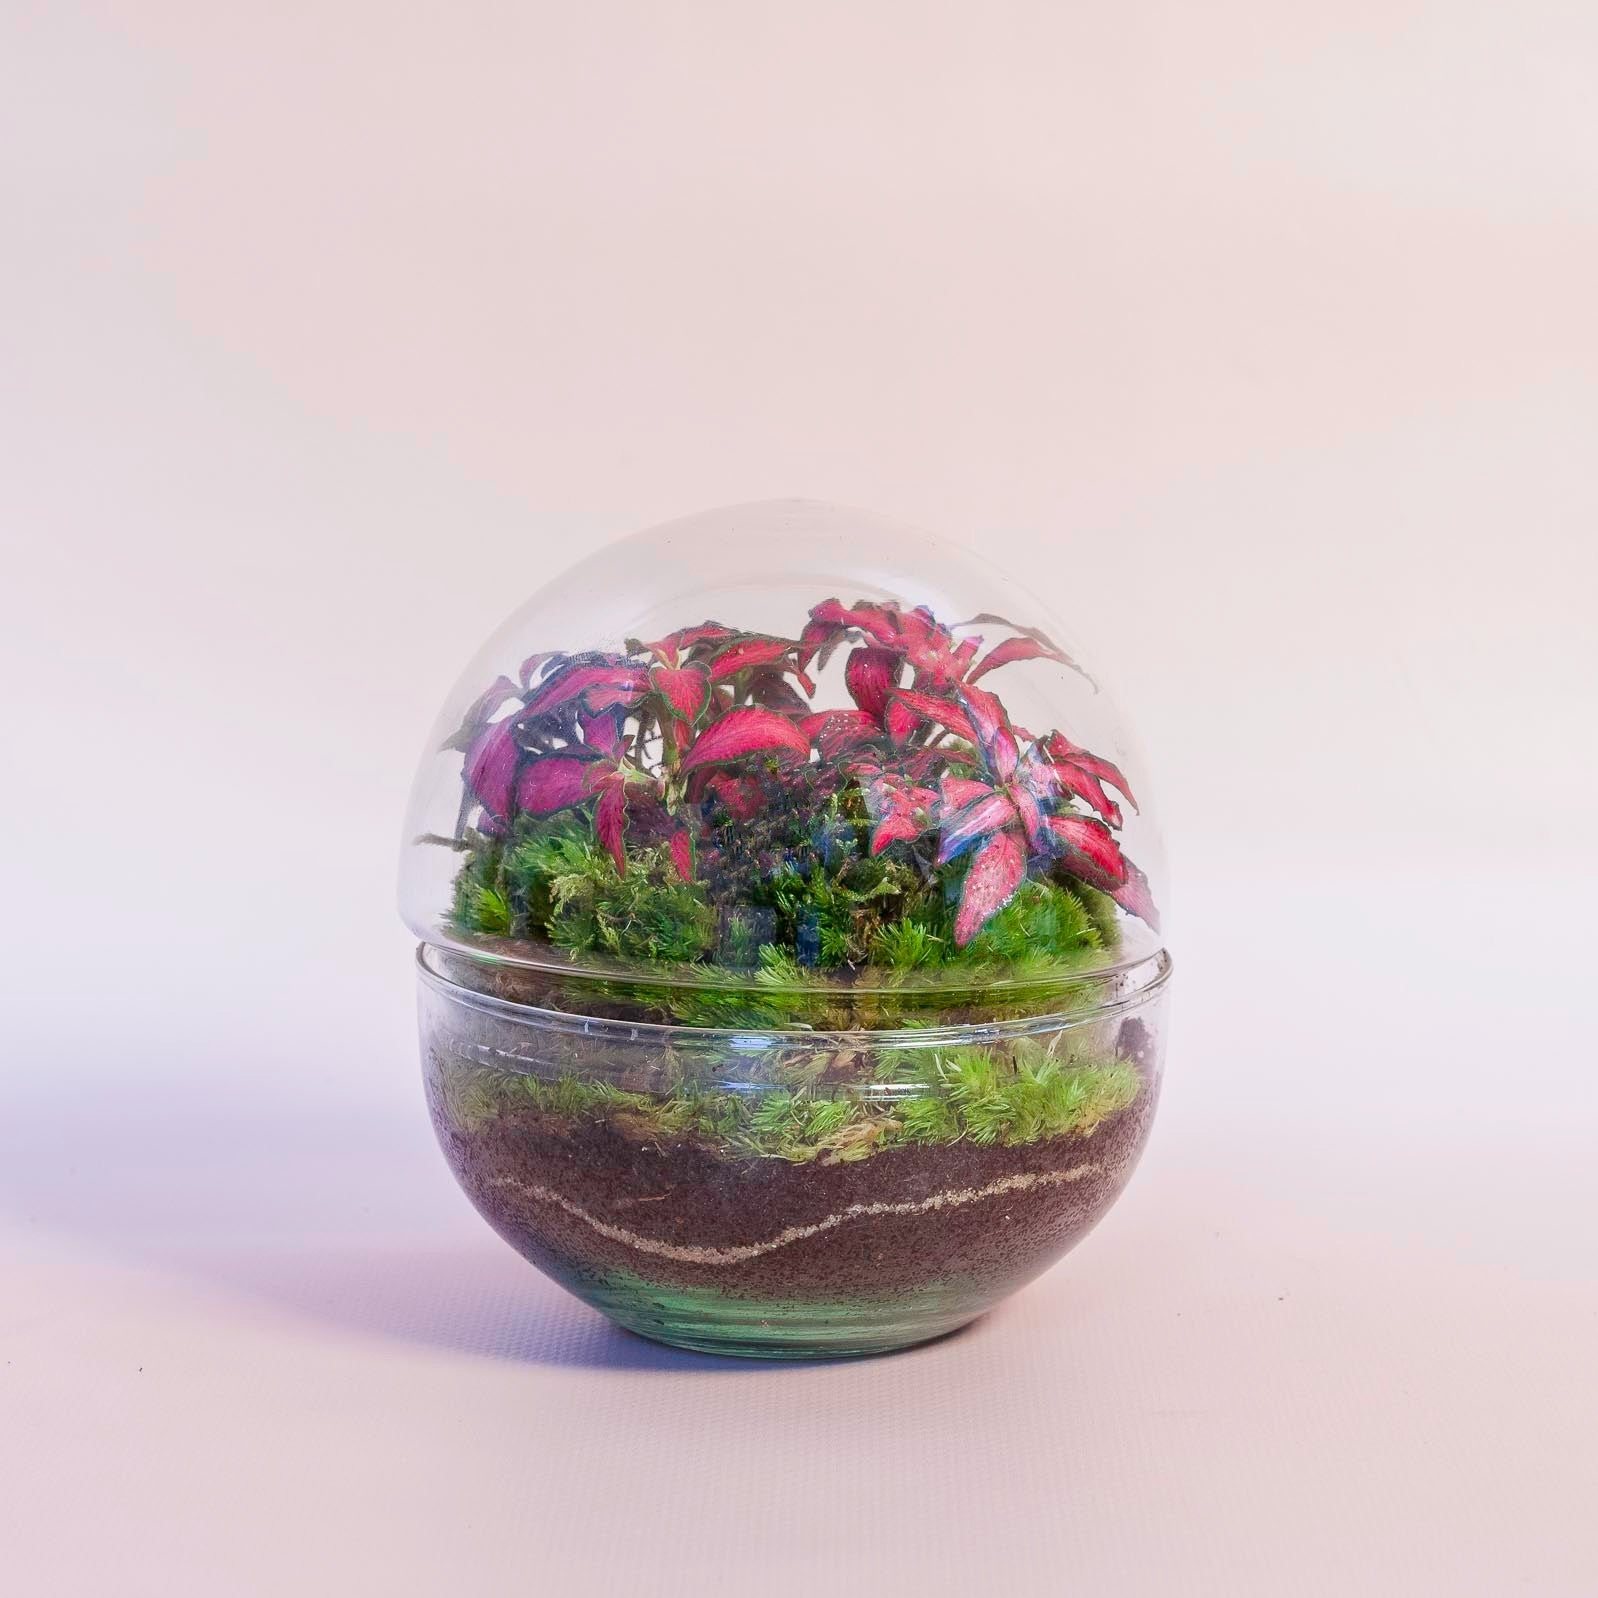 Terrario Mini de Plantas Naturales Jardín Eterno en Cúpula de Cristal de 10  x 7 cm formado por Fittonia roja